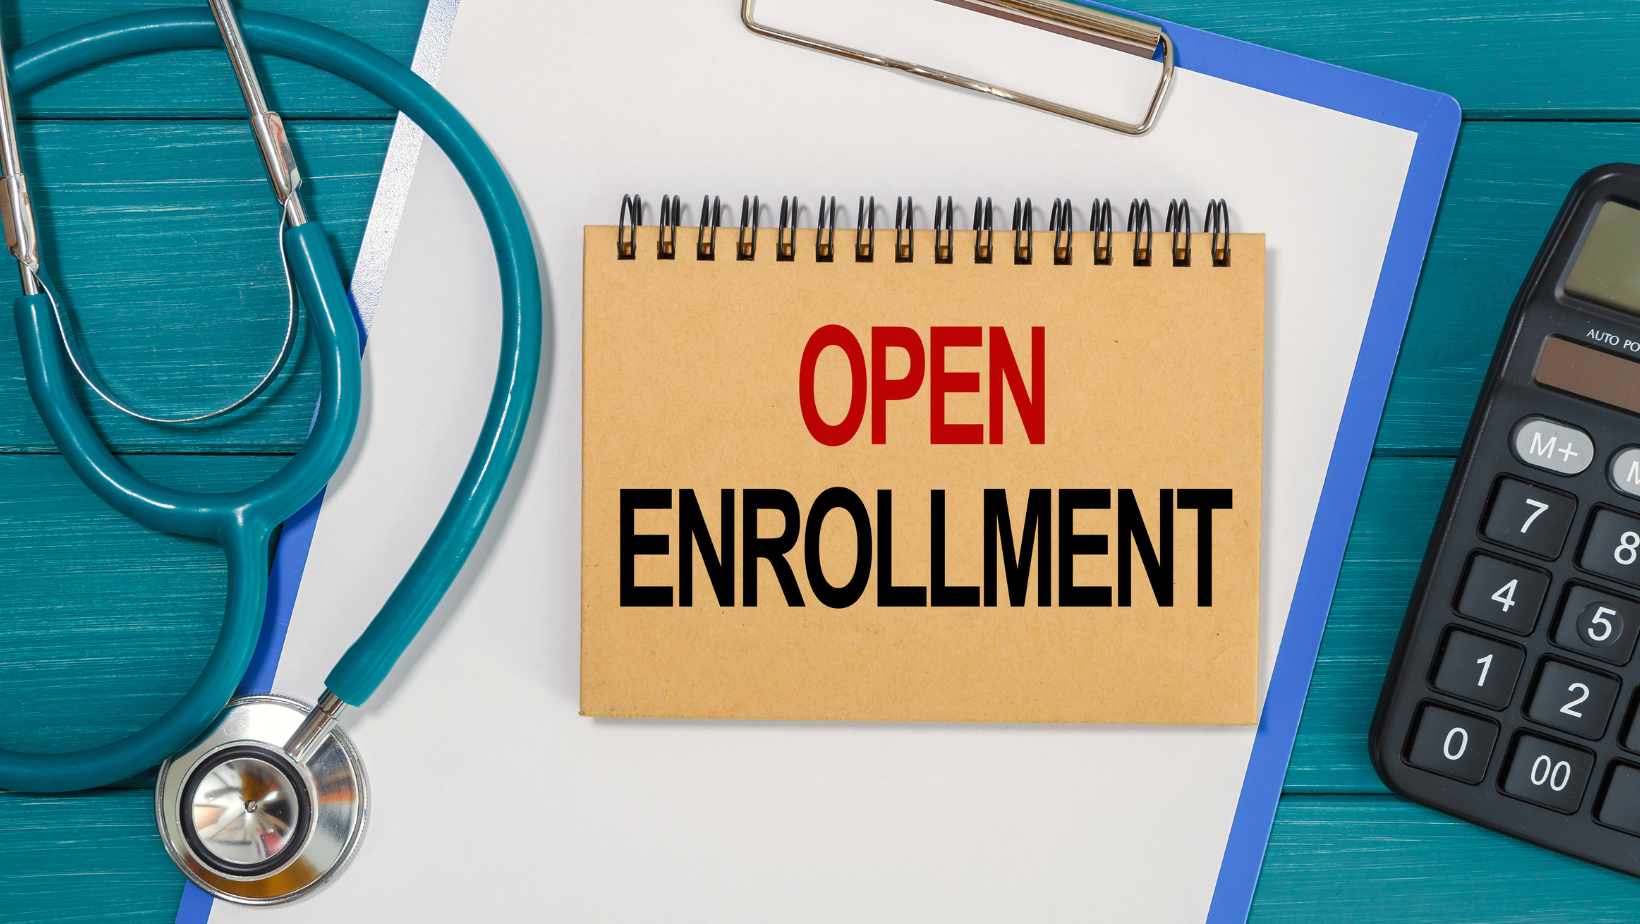 Open Enrollment, banner image